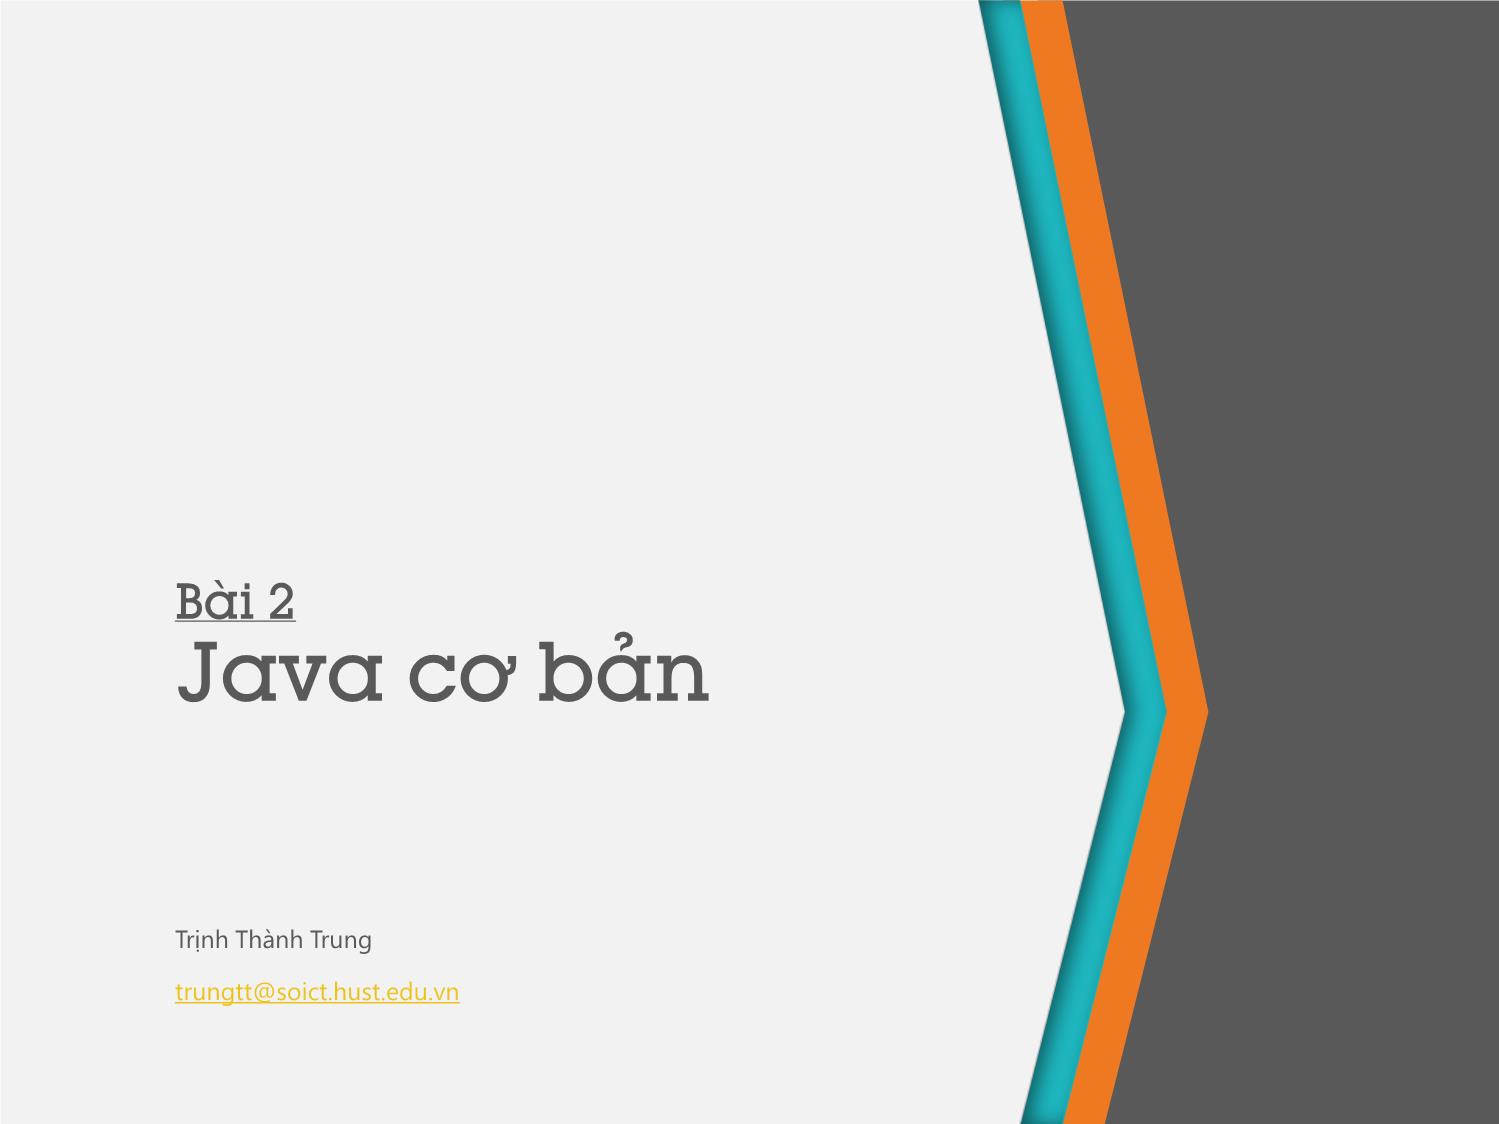 Bài giảng Lập trình hướng đối tượng - Bài 2: Java cơ bản - Trịnh Thành Trung trang 1